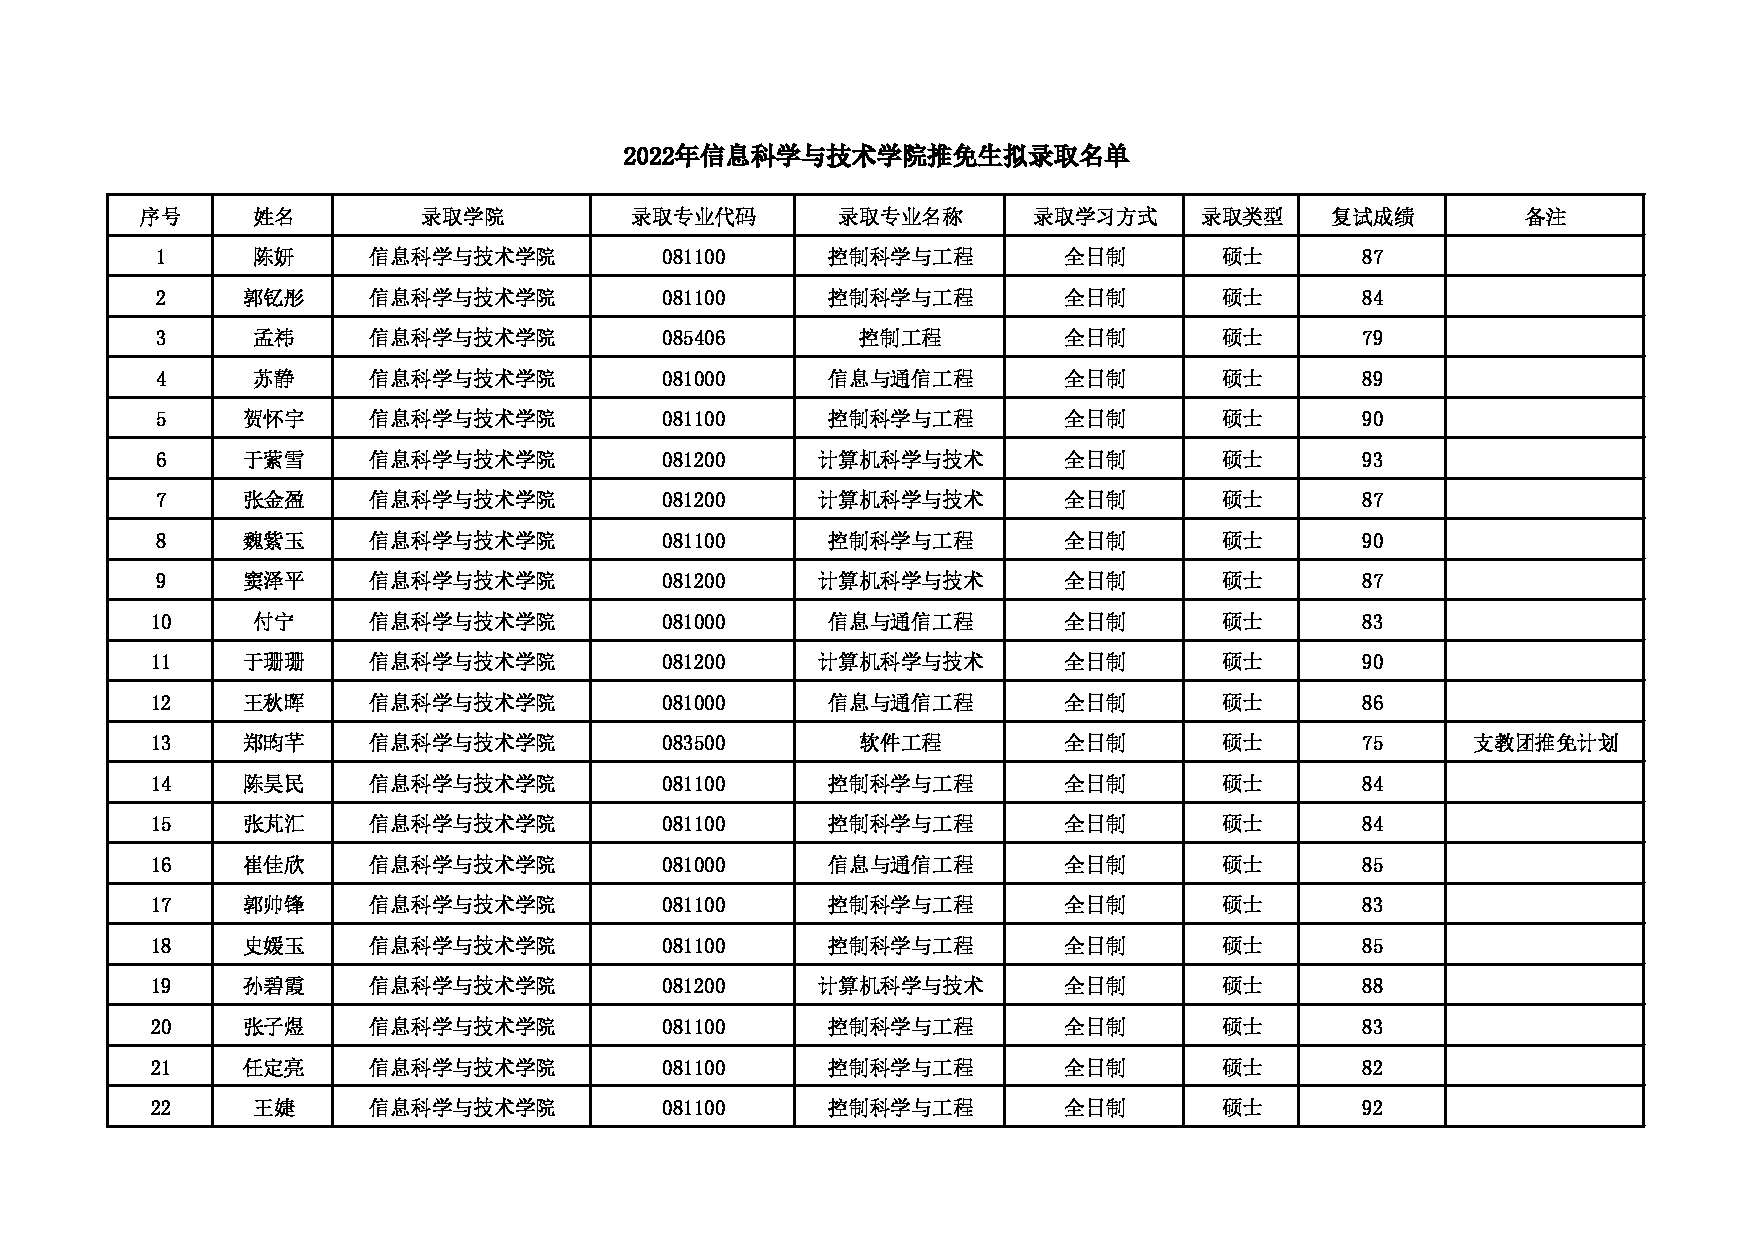 2022考研拟录取名单：北京化工大学2022年信息科学与技术学院推免生拟录取名单 第1页